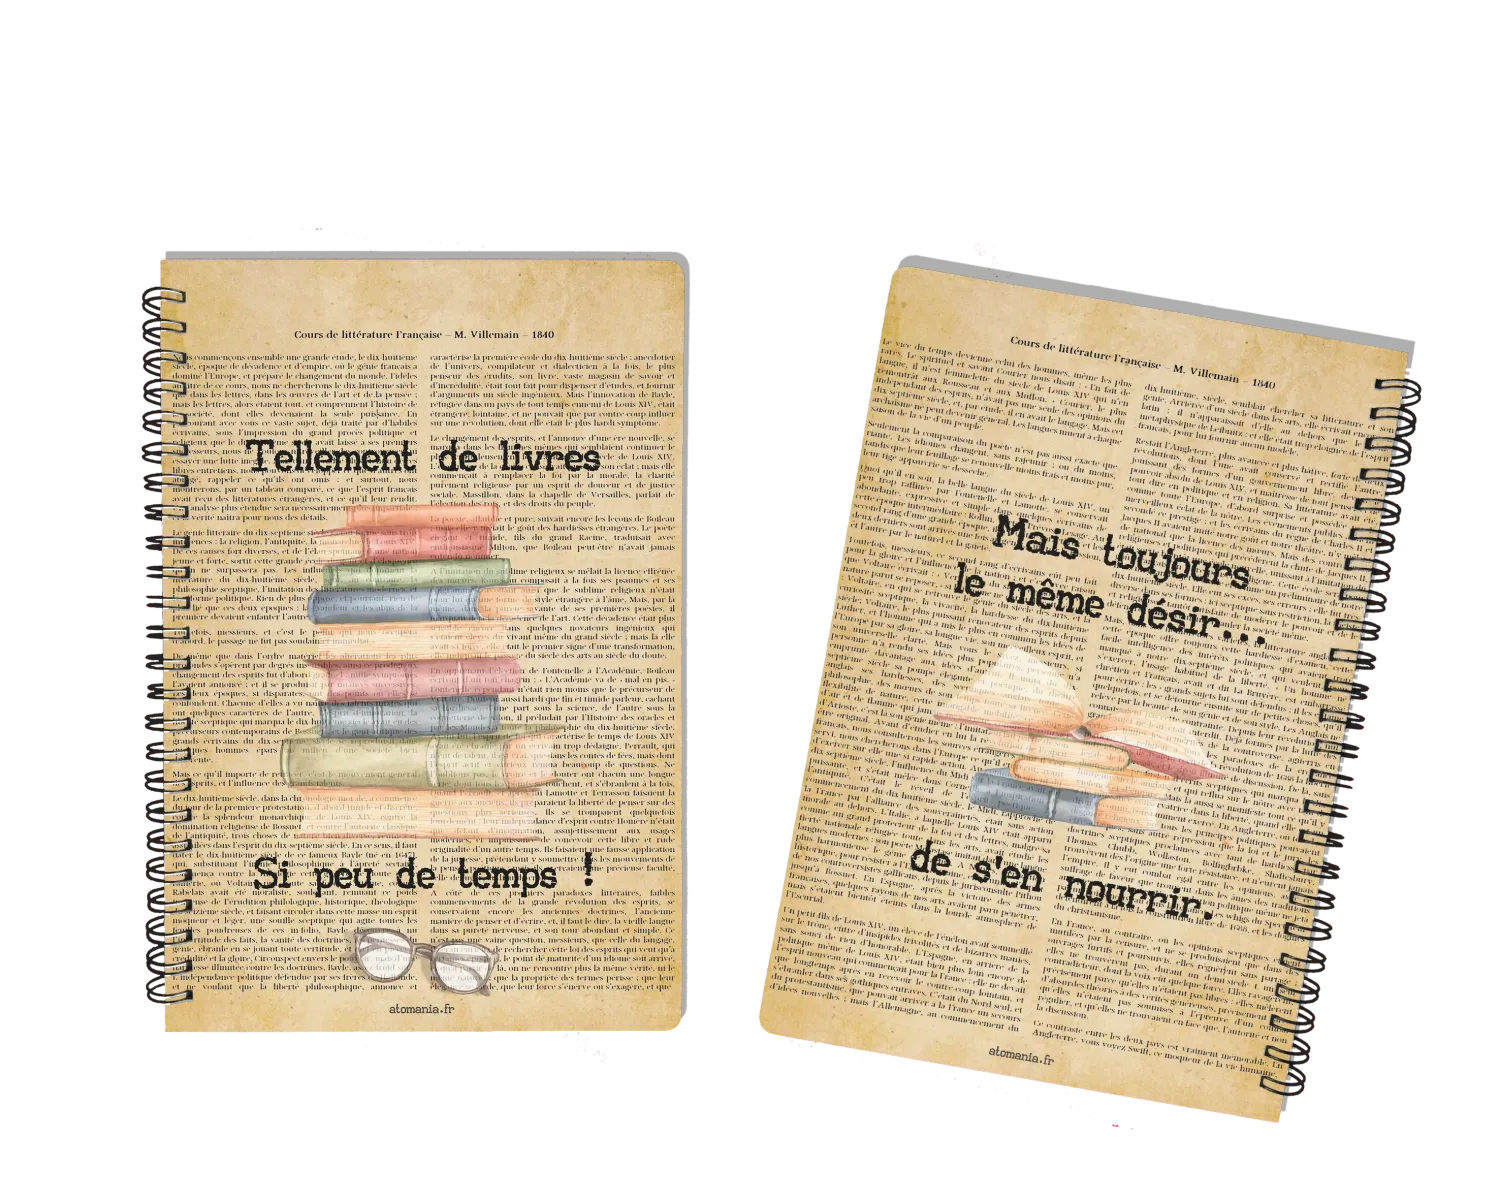 Cahier Inspirant avec Citation - Charme Rétro, Format A5, 60 Feuillets, Couverture Rigide, Livraison Rapide